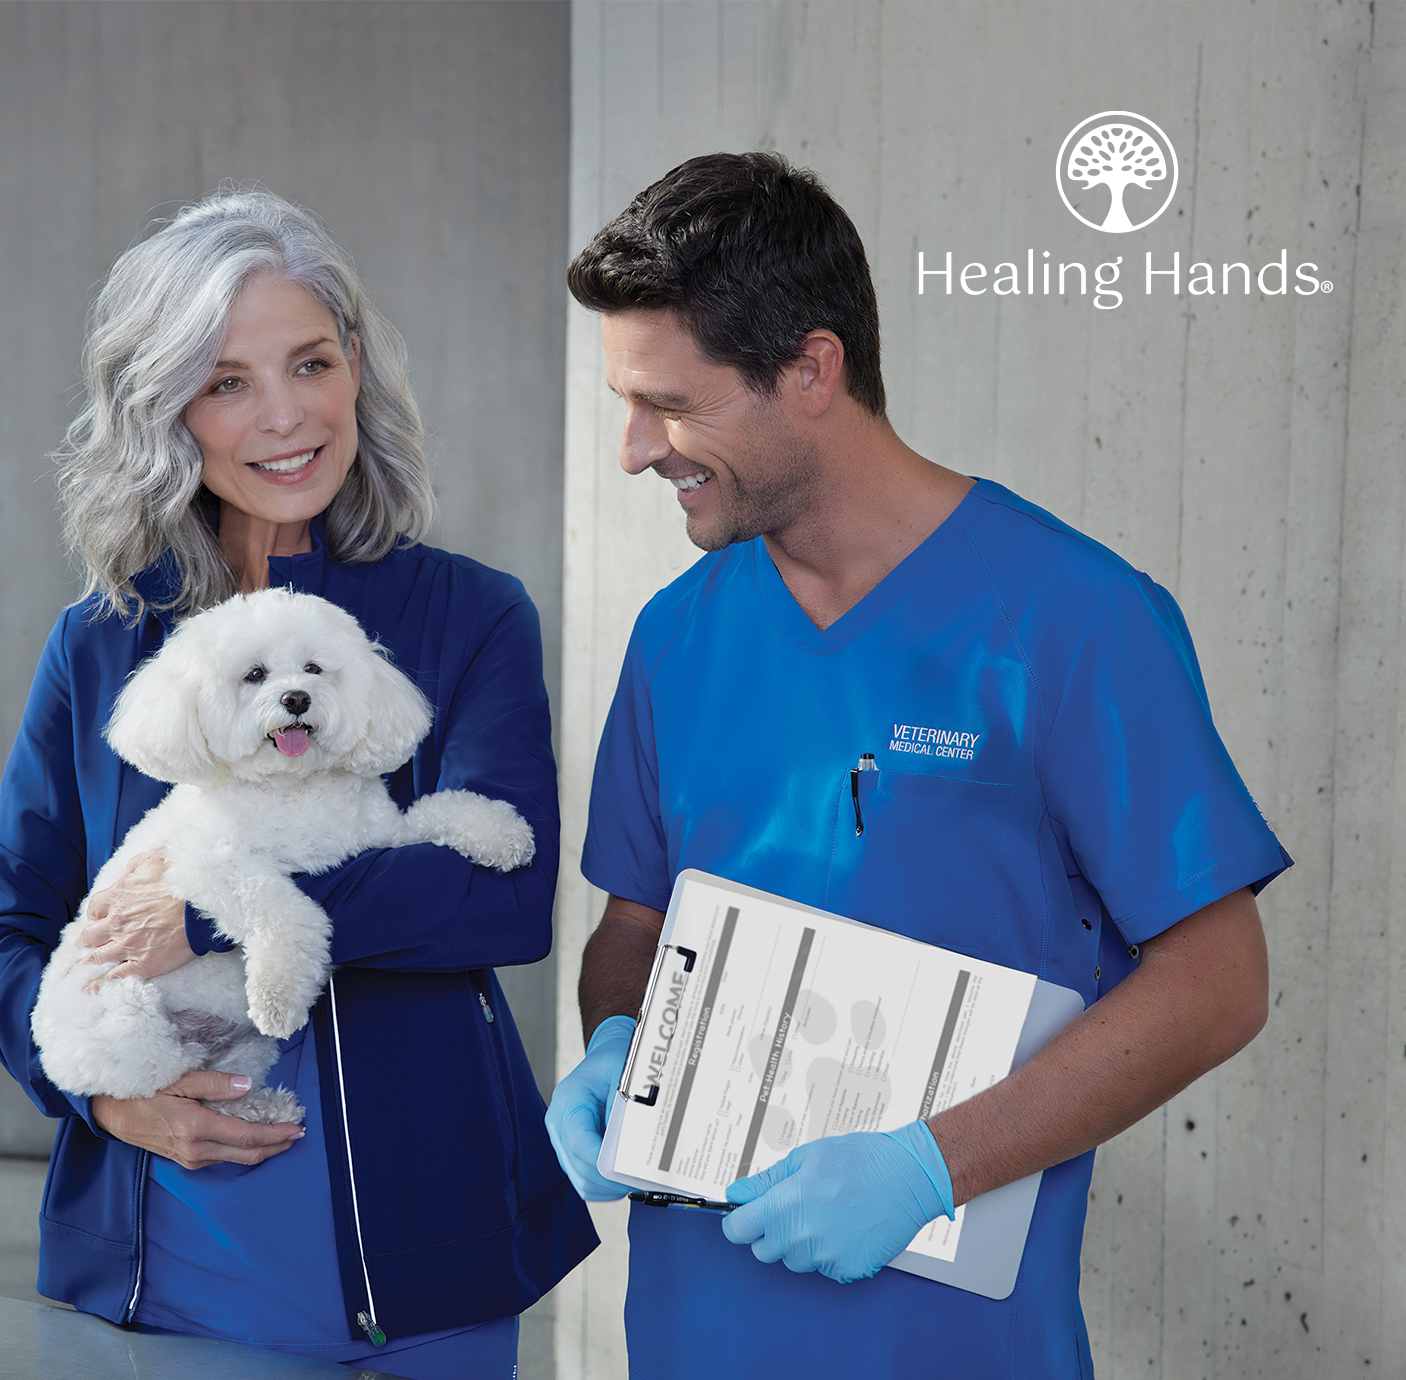 Viewing Healing Hands Scrubs